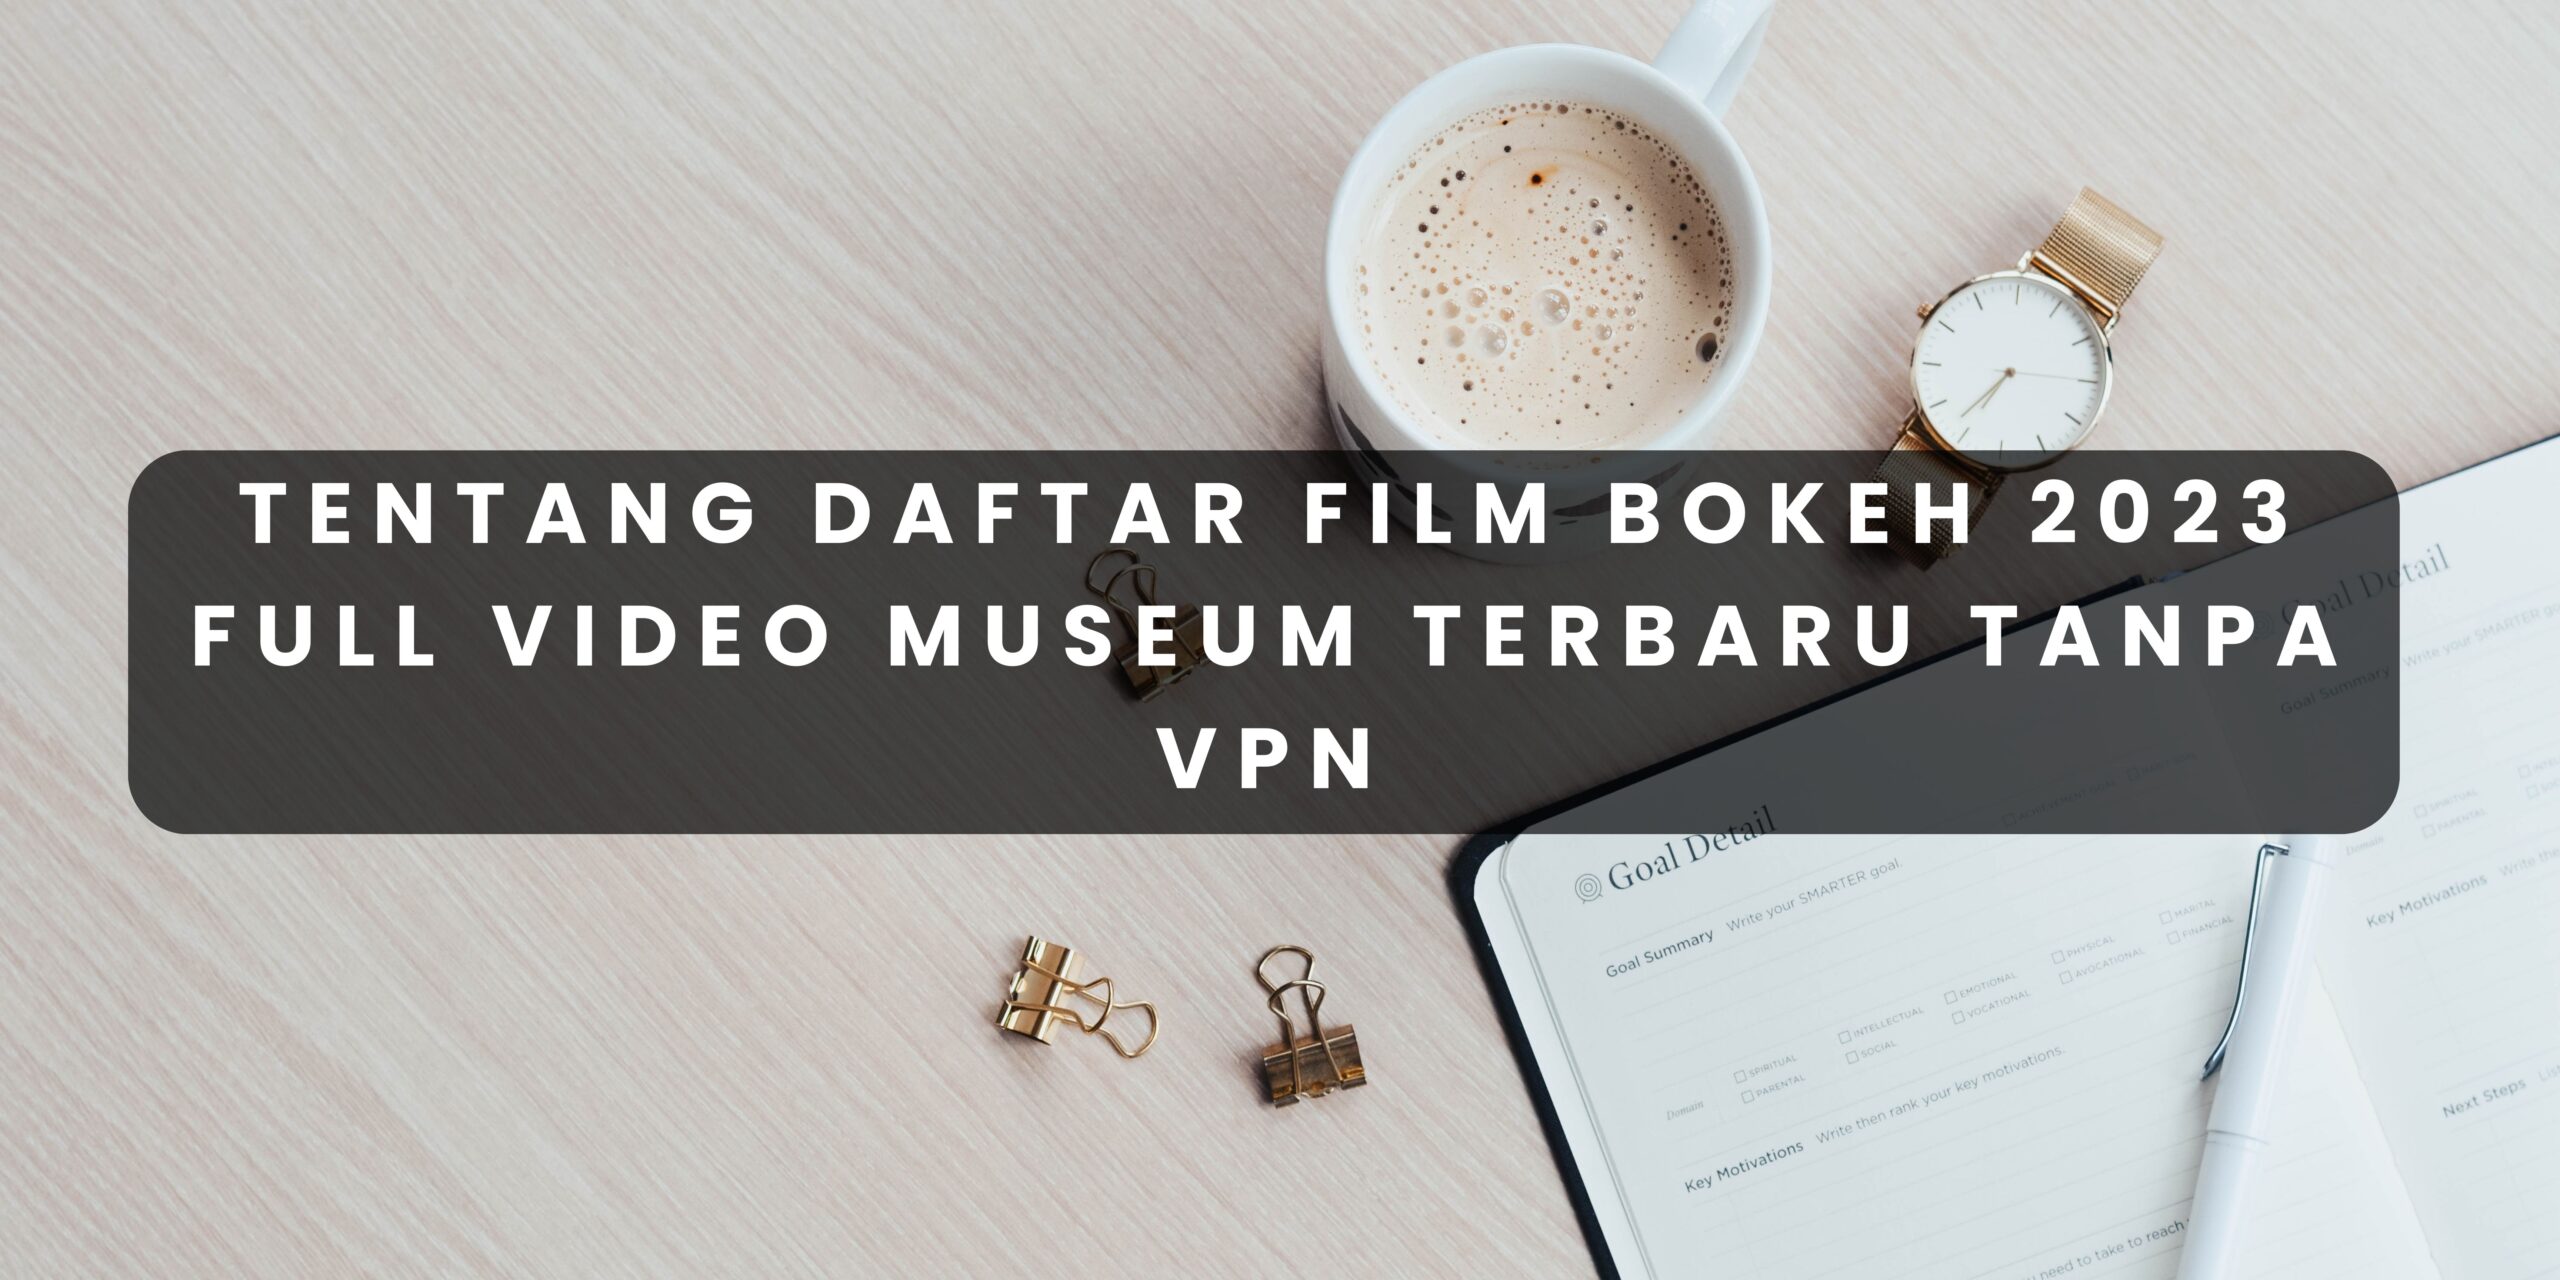 Tentang Daftar Film Bokeh 2023 Full Video Museum Terbaru Tanpa VPN